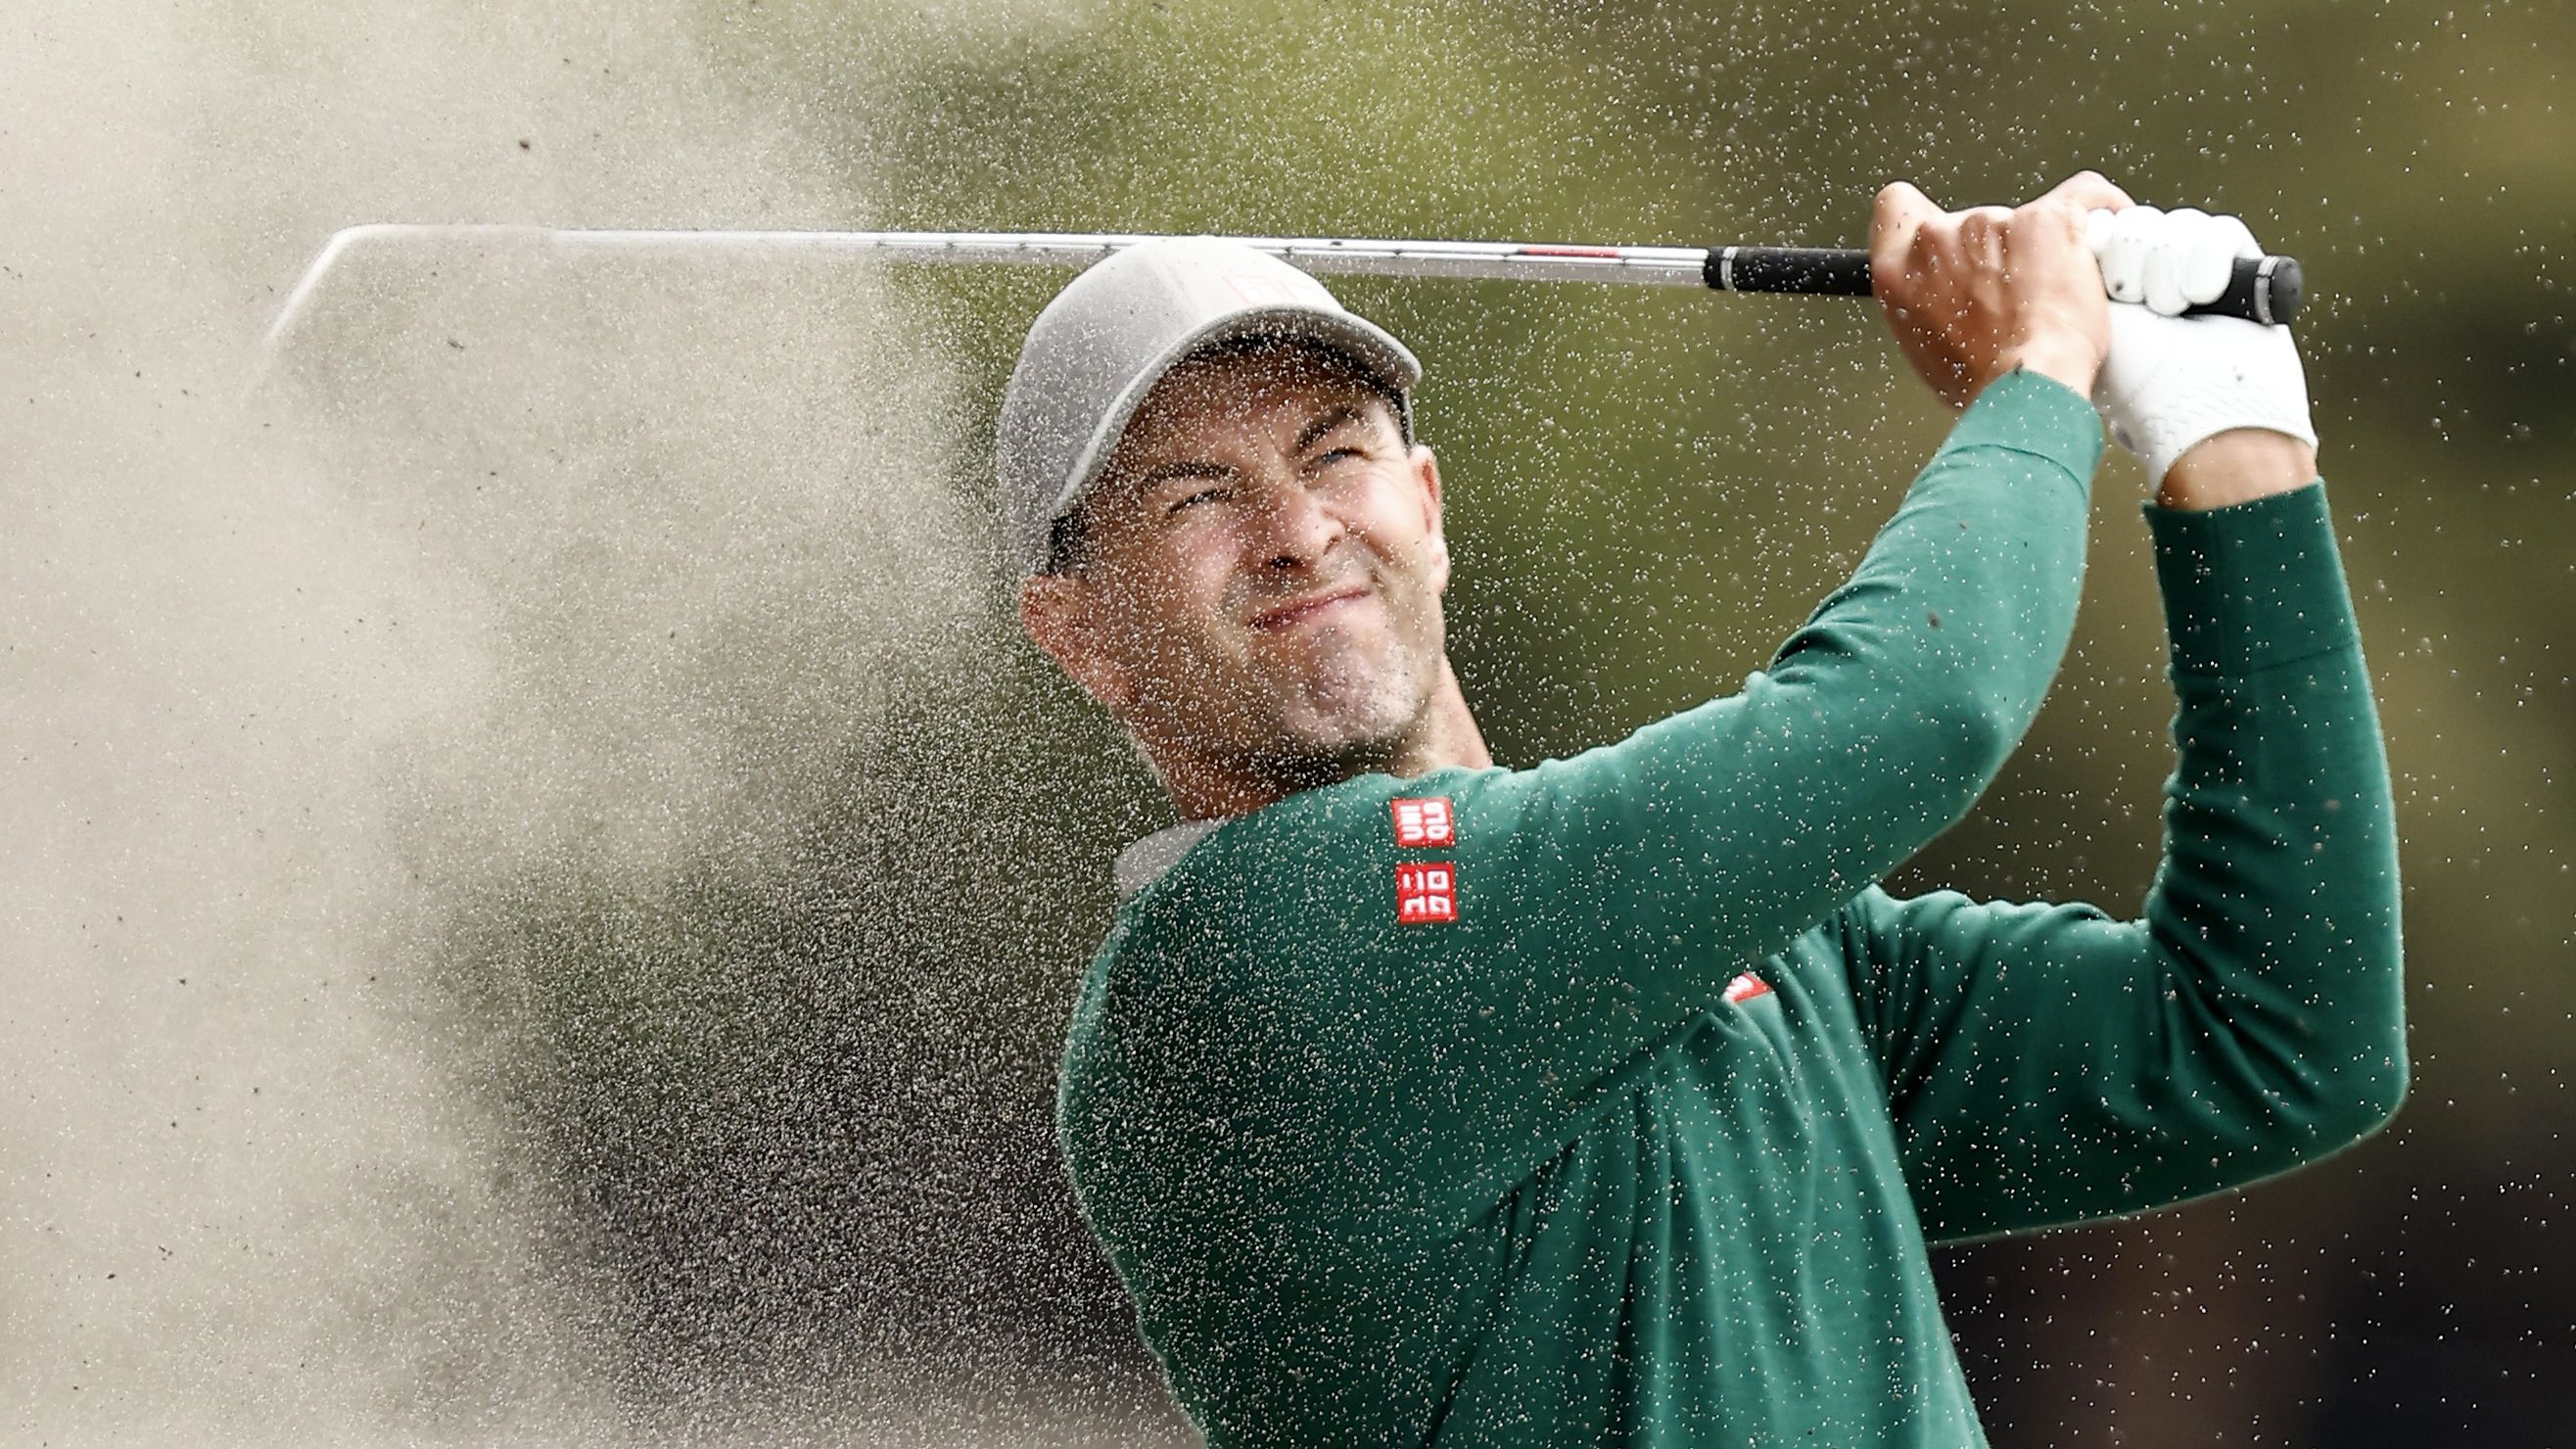 Aussie golfing great Adam Scott's 'motivation' admission after $98m career